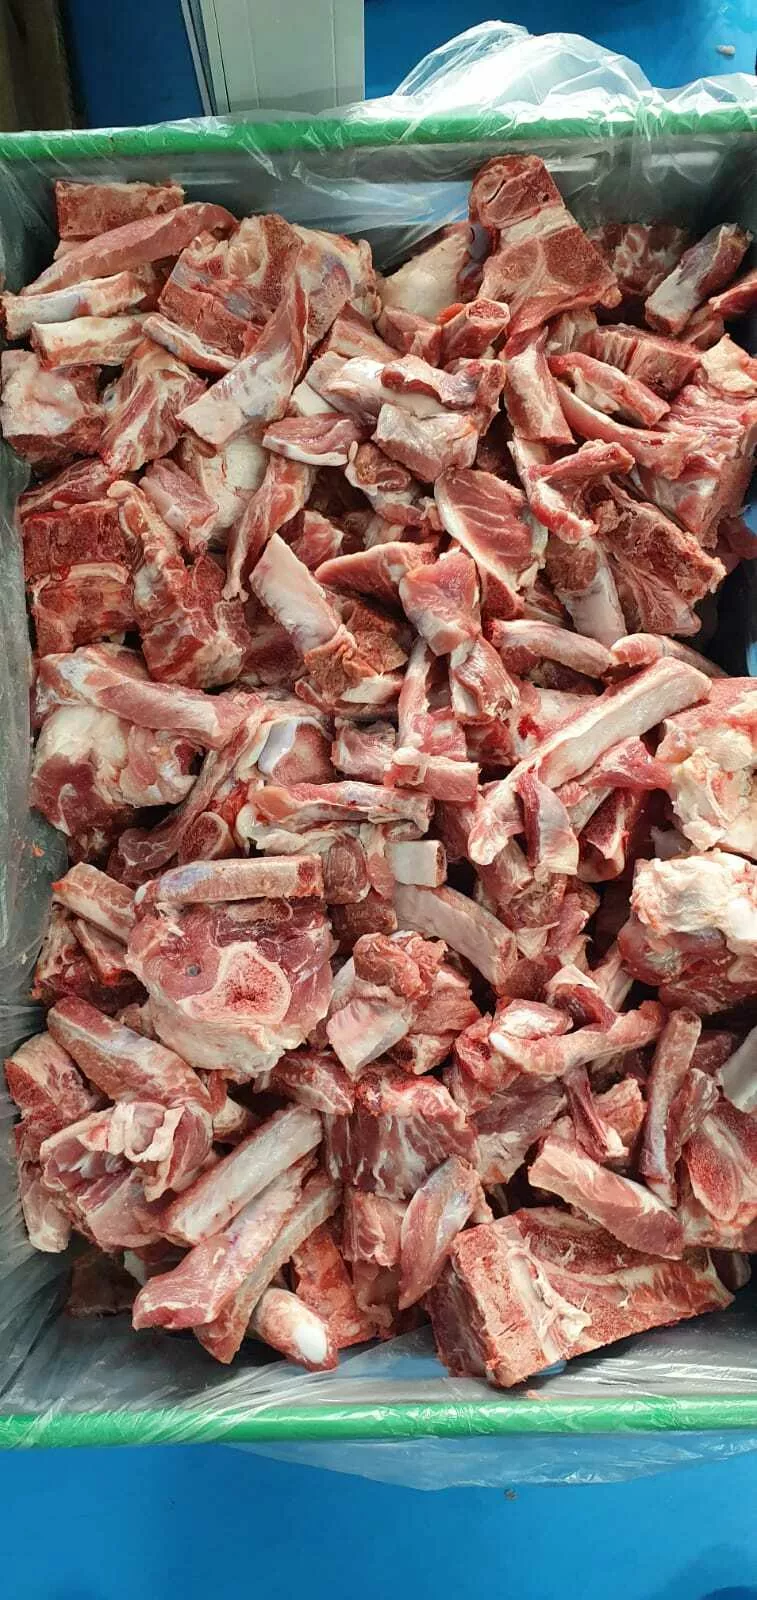 свинина от производителя нск мясной хит в Новосибирске и Новосибирской области 2